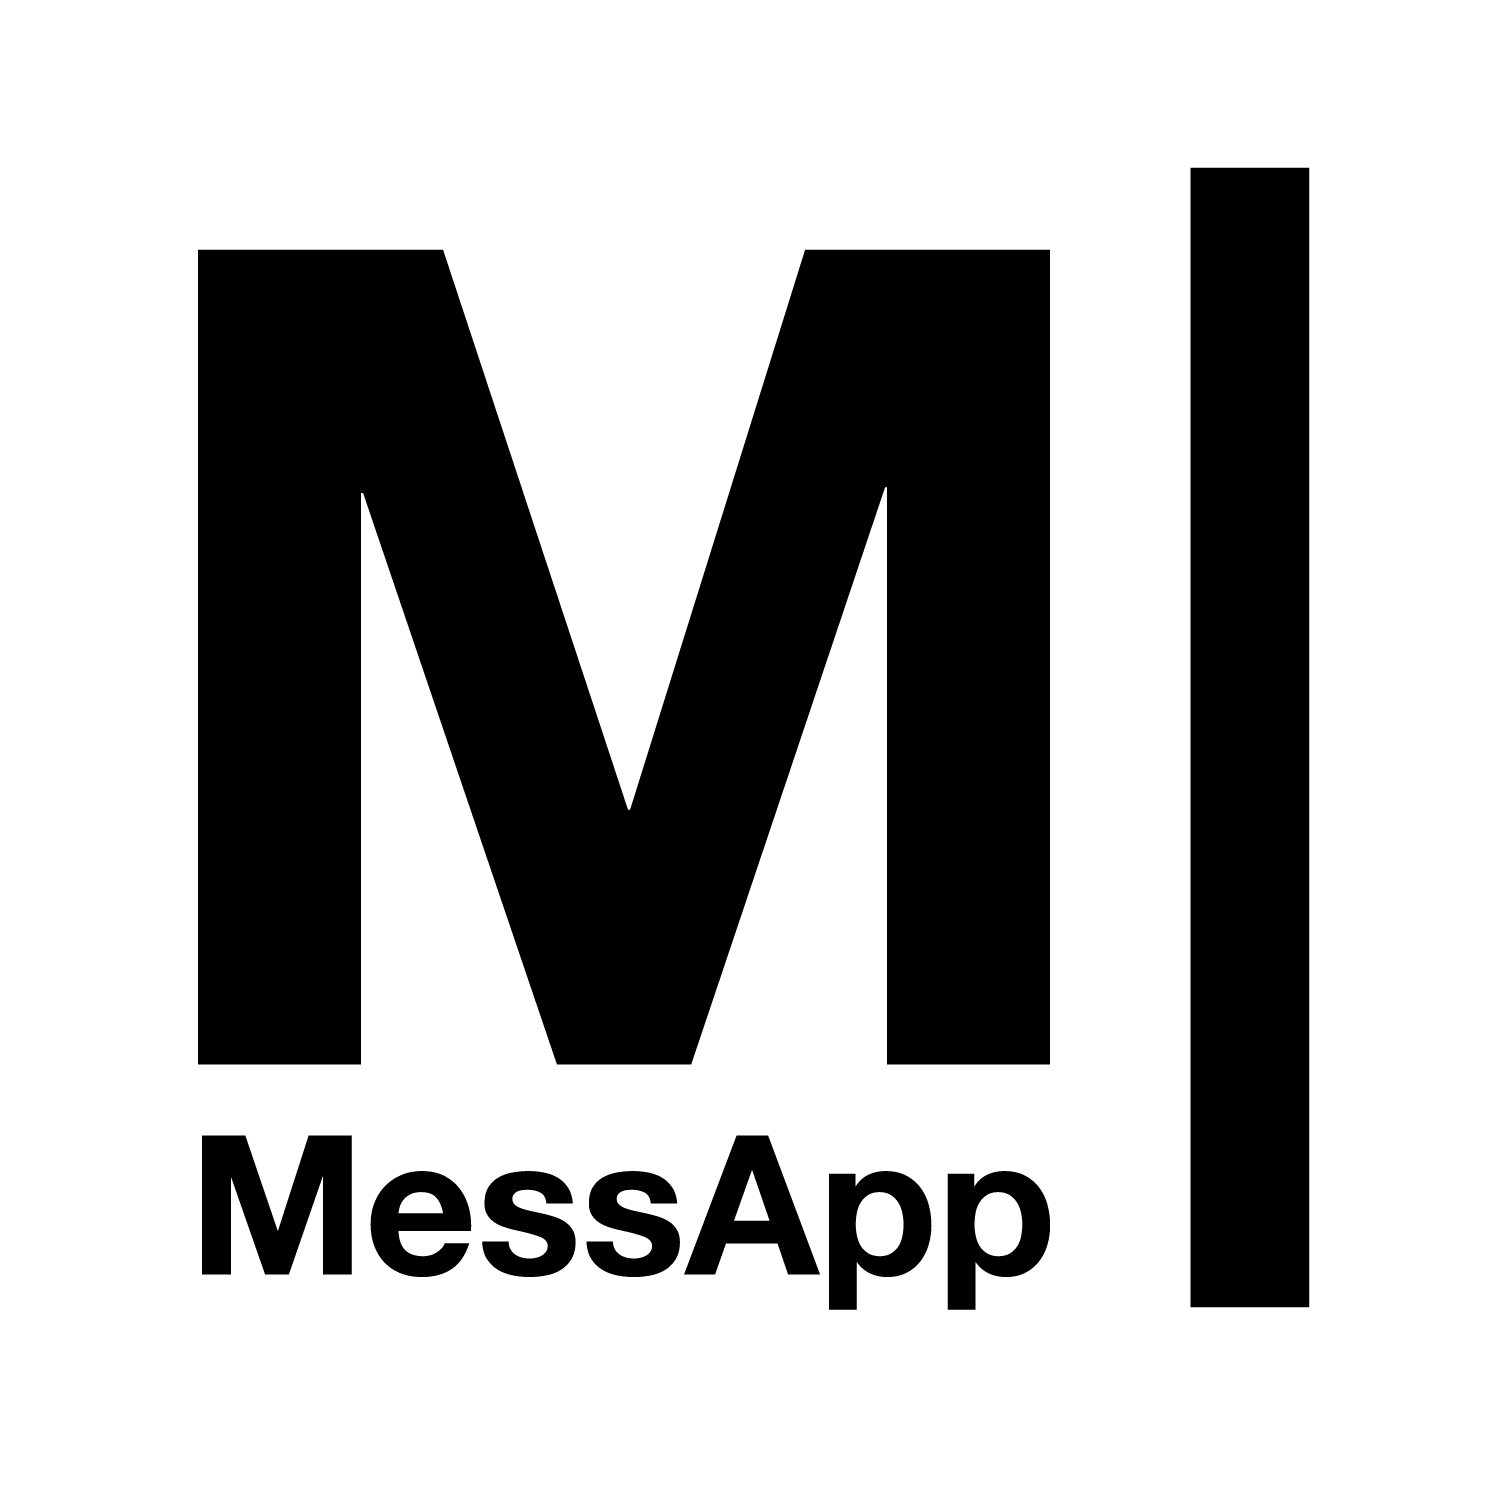 Logo MessApp Technology Liguistict